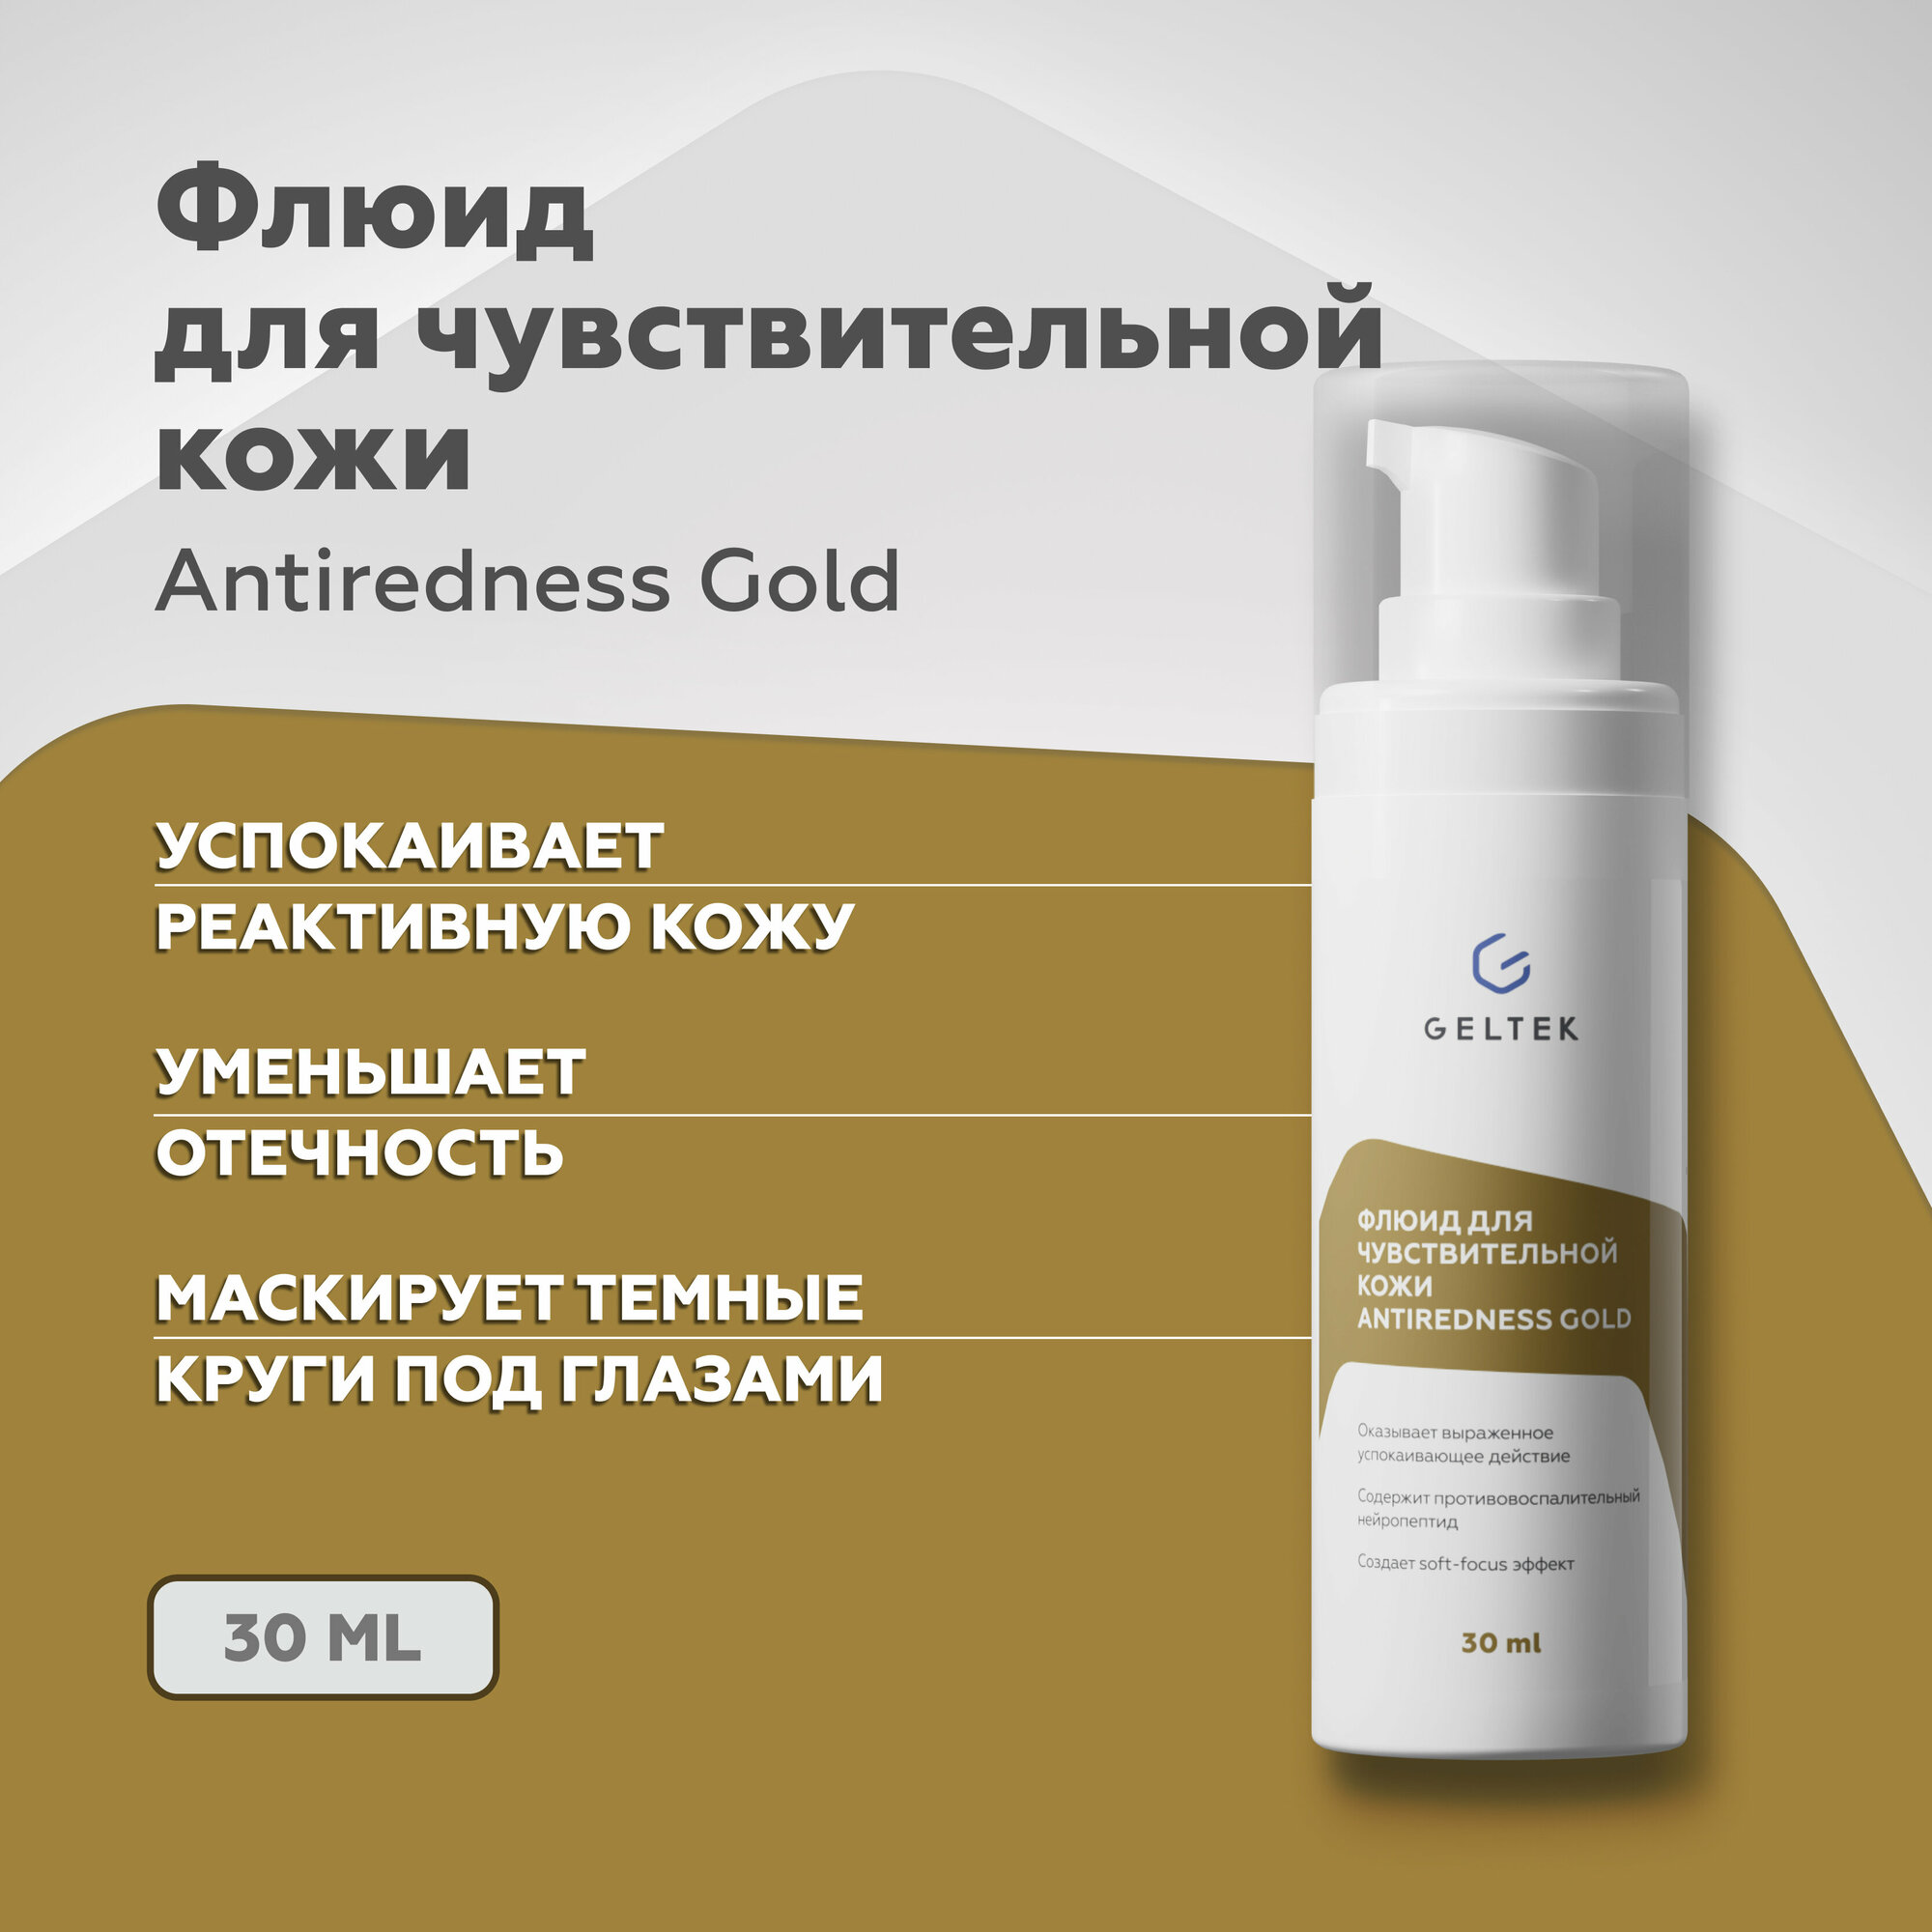 Гельтек Флюид для чувствительной кожи Antiredness Gold успокаивающий, восстанавливающий 30мл